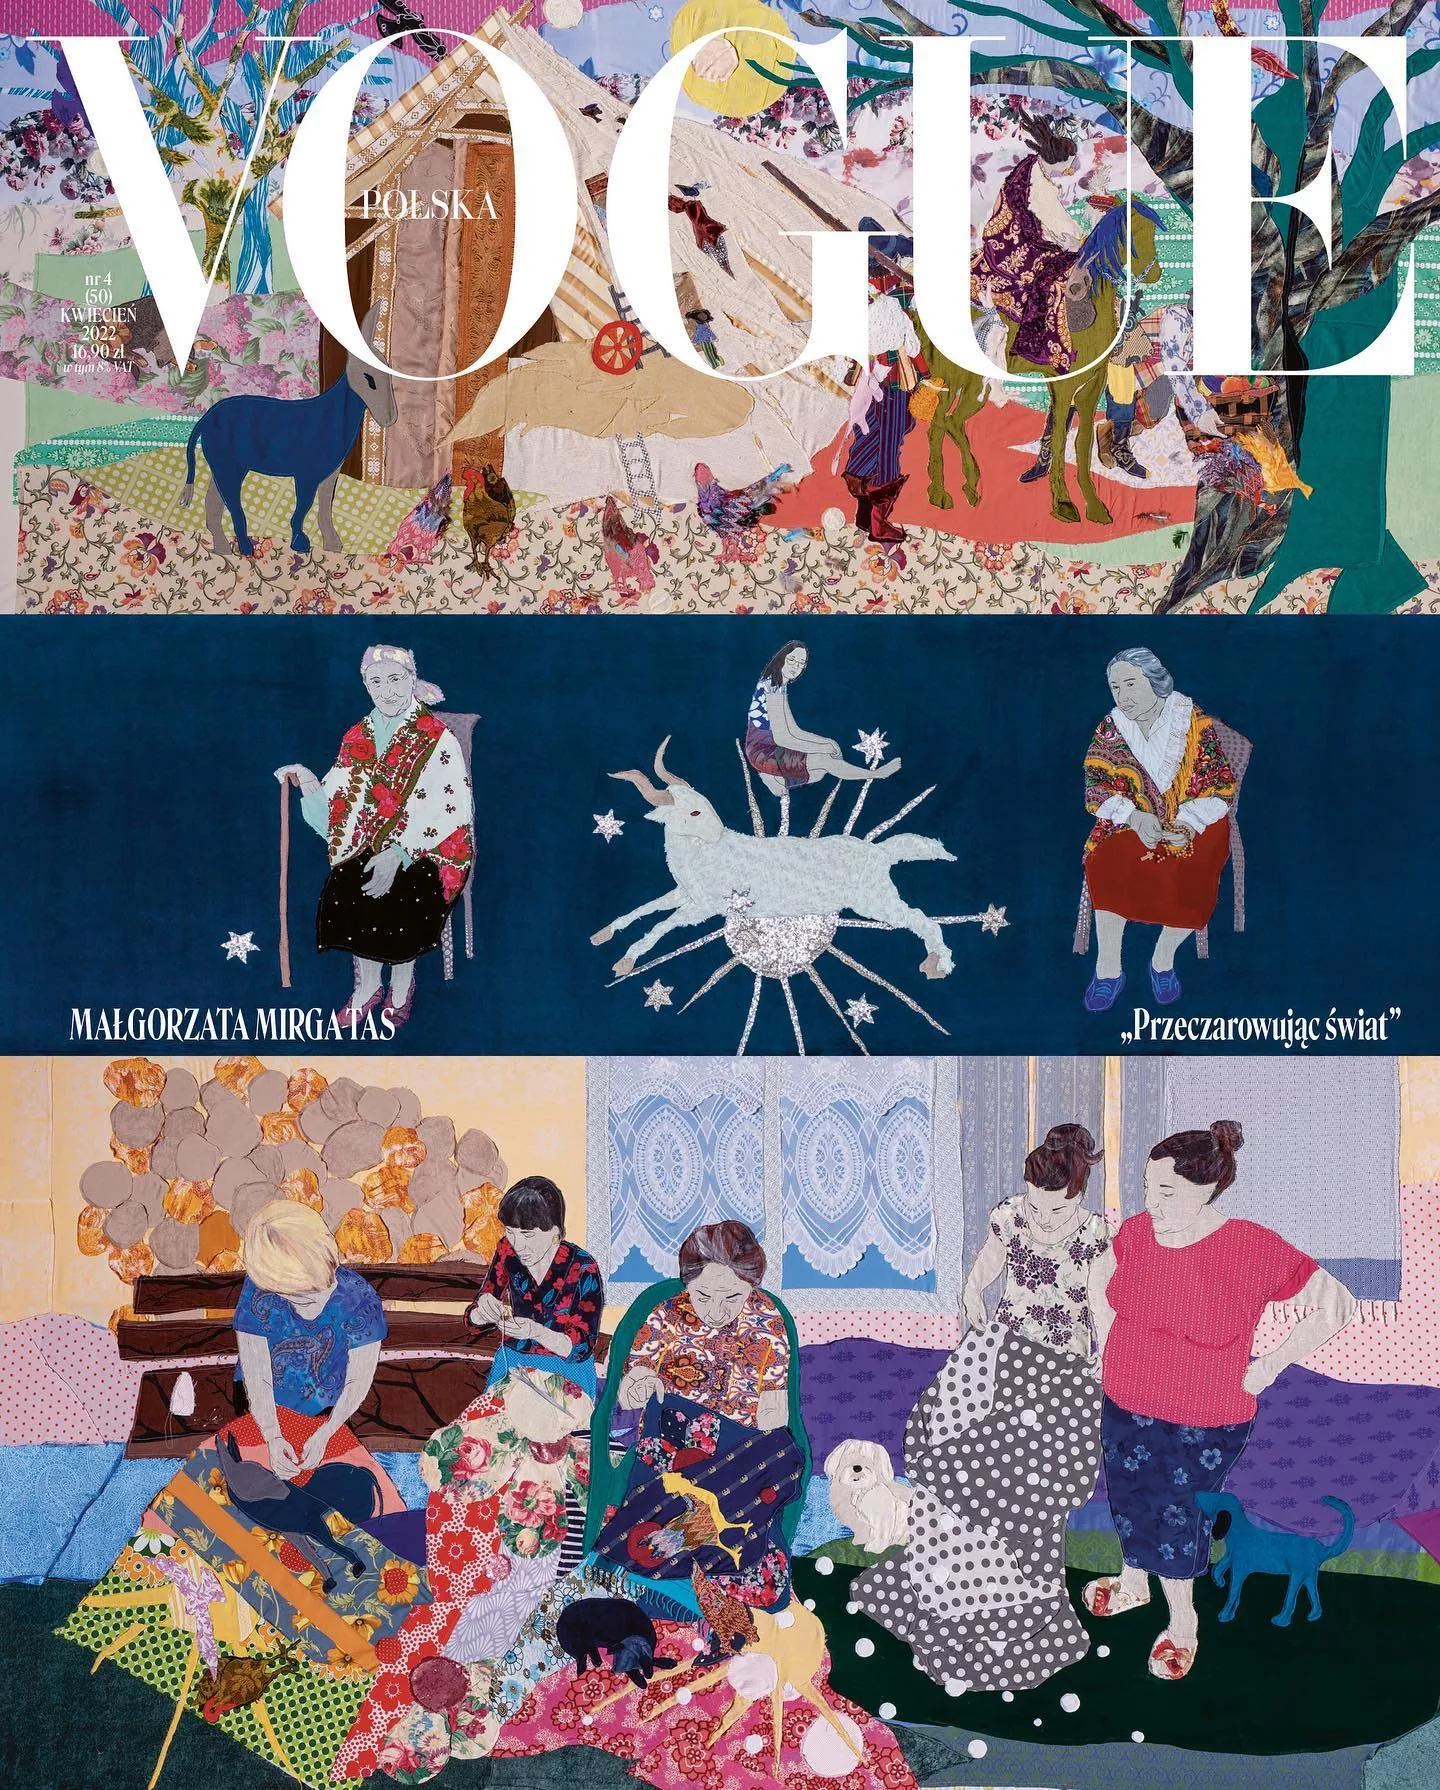 Вторая обложка апрельского Vogue Polska